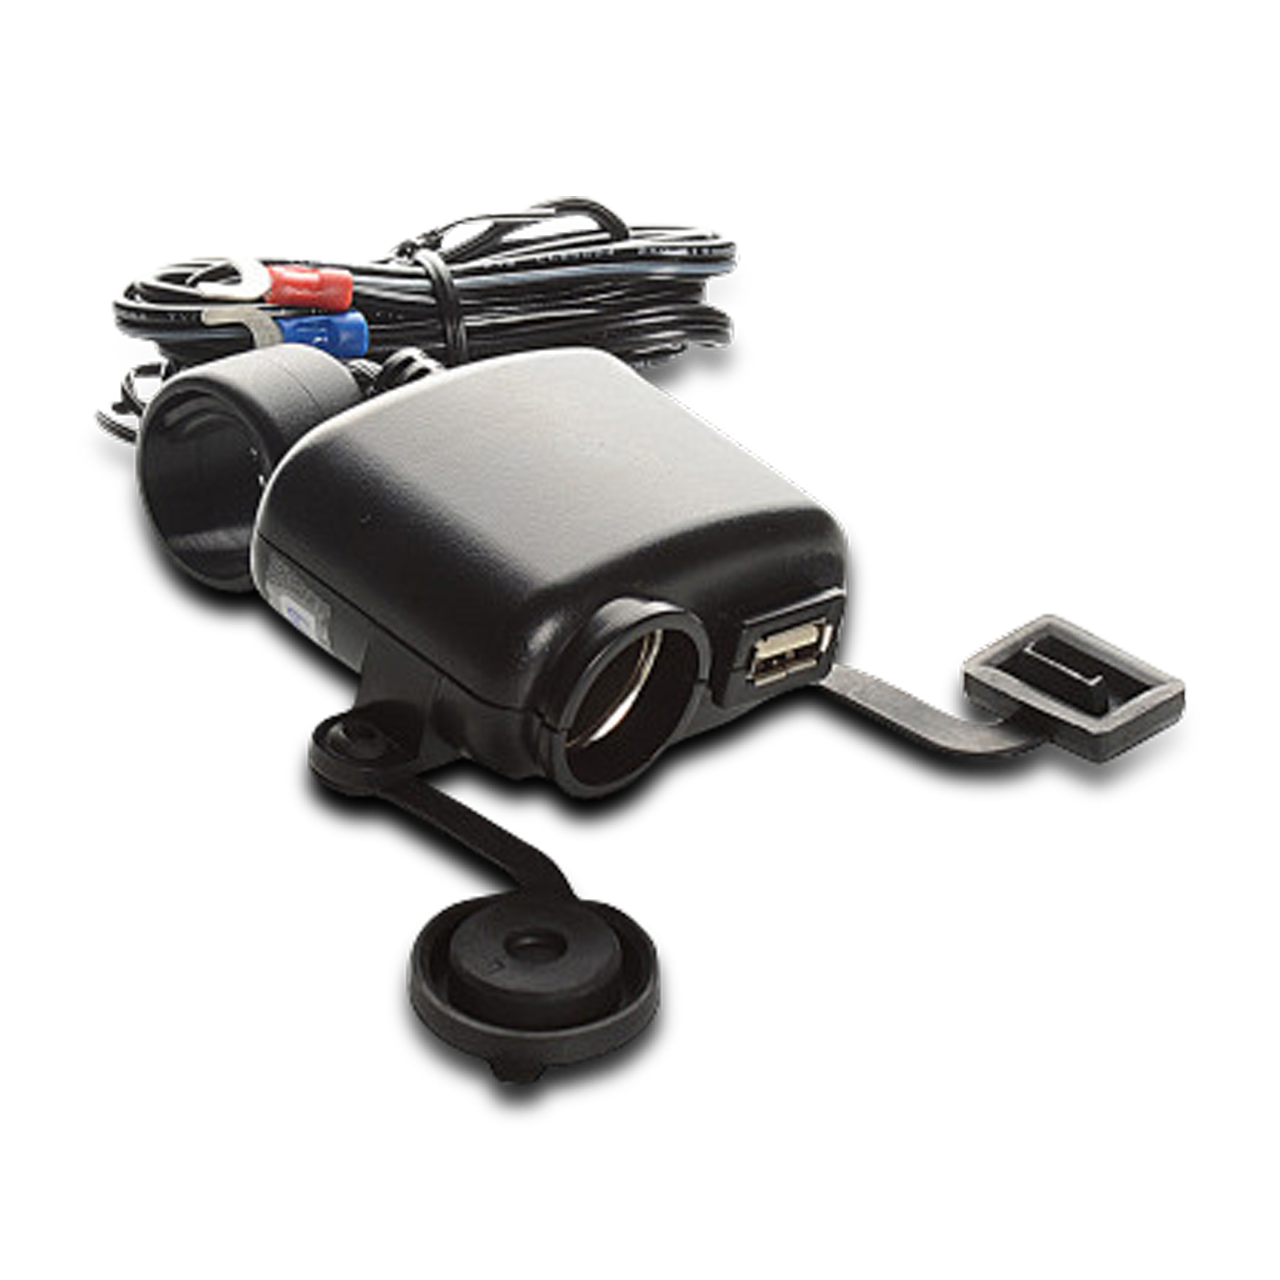 USB, 12 45 V motocicleta USB socket teléfono fuente de alimentación USB  puerto encendedor de cigarrillos enchufe para motocicleta moto scooter